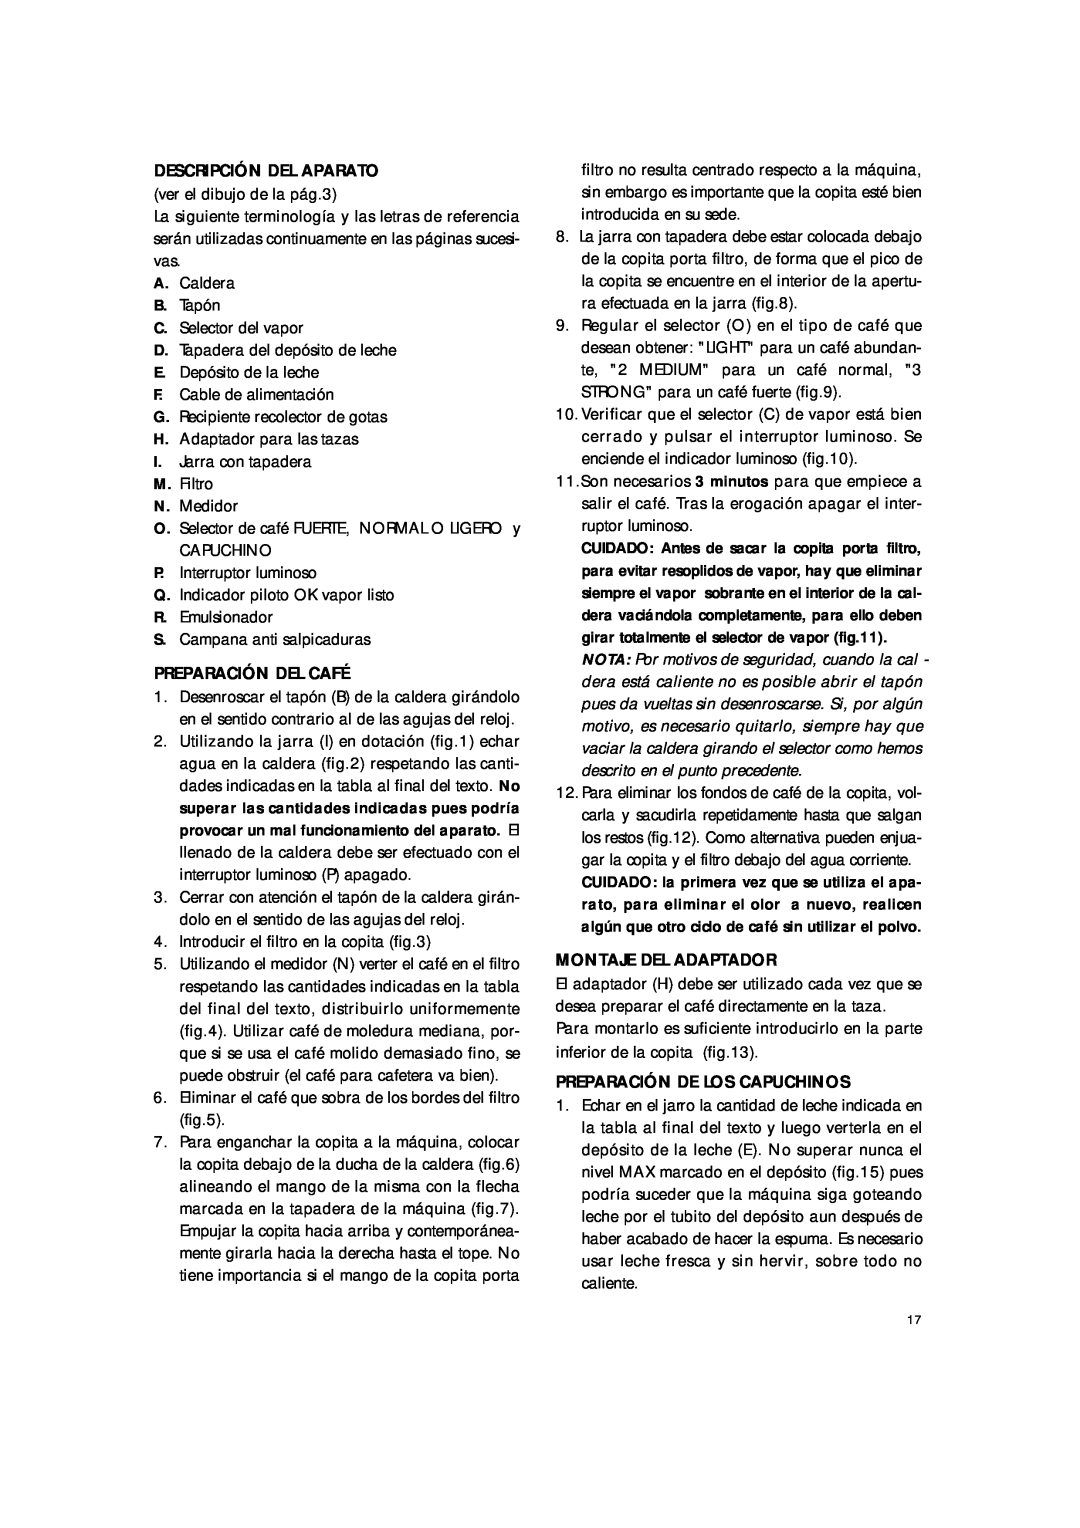 DeLonghi BAR8 manual Descripción Del Aparato, Preparación Del Café, Montaje Del Adaptador, Preparación De Los Capuchinos 